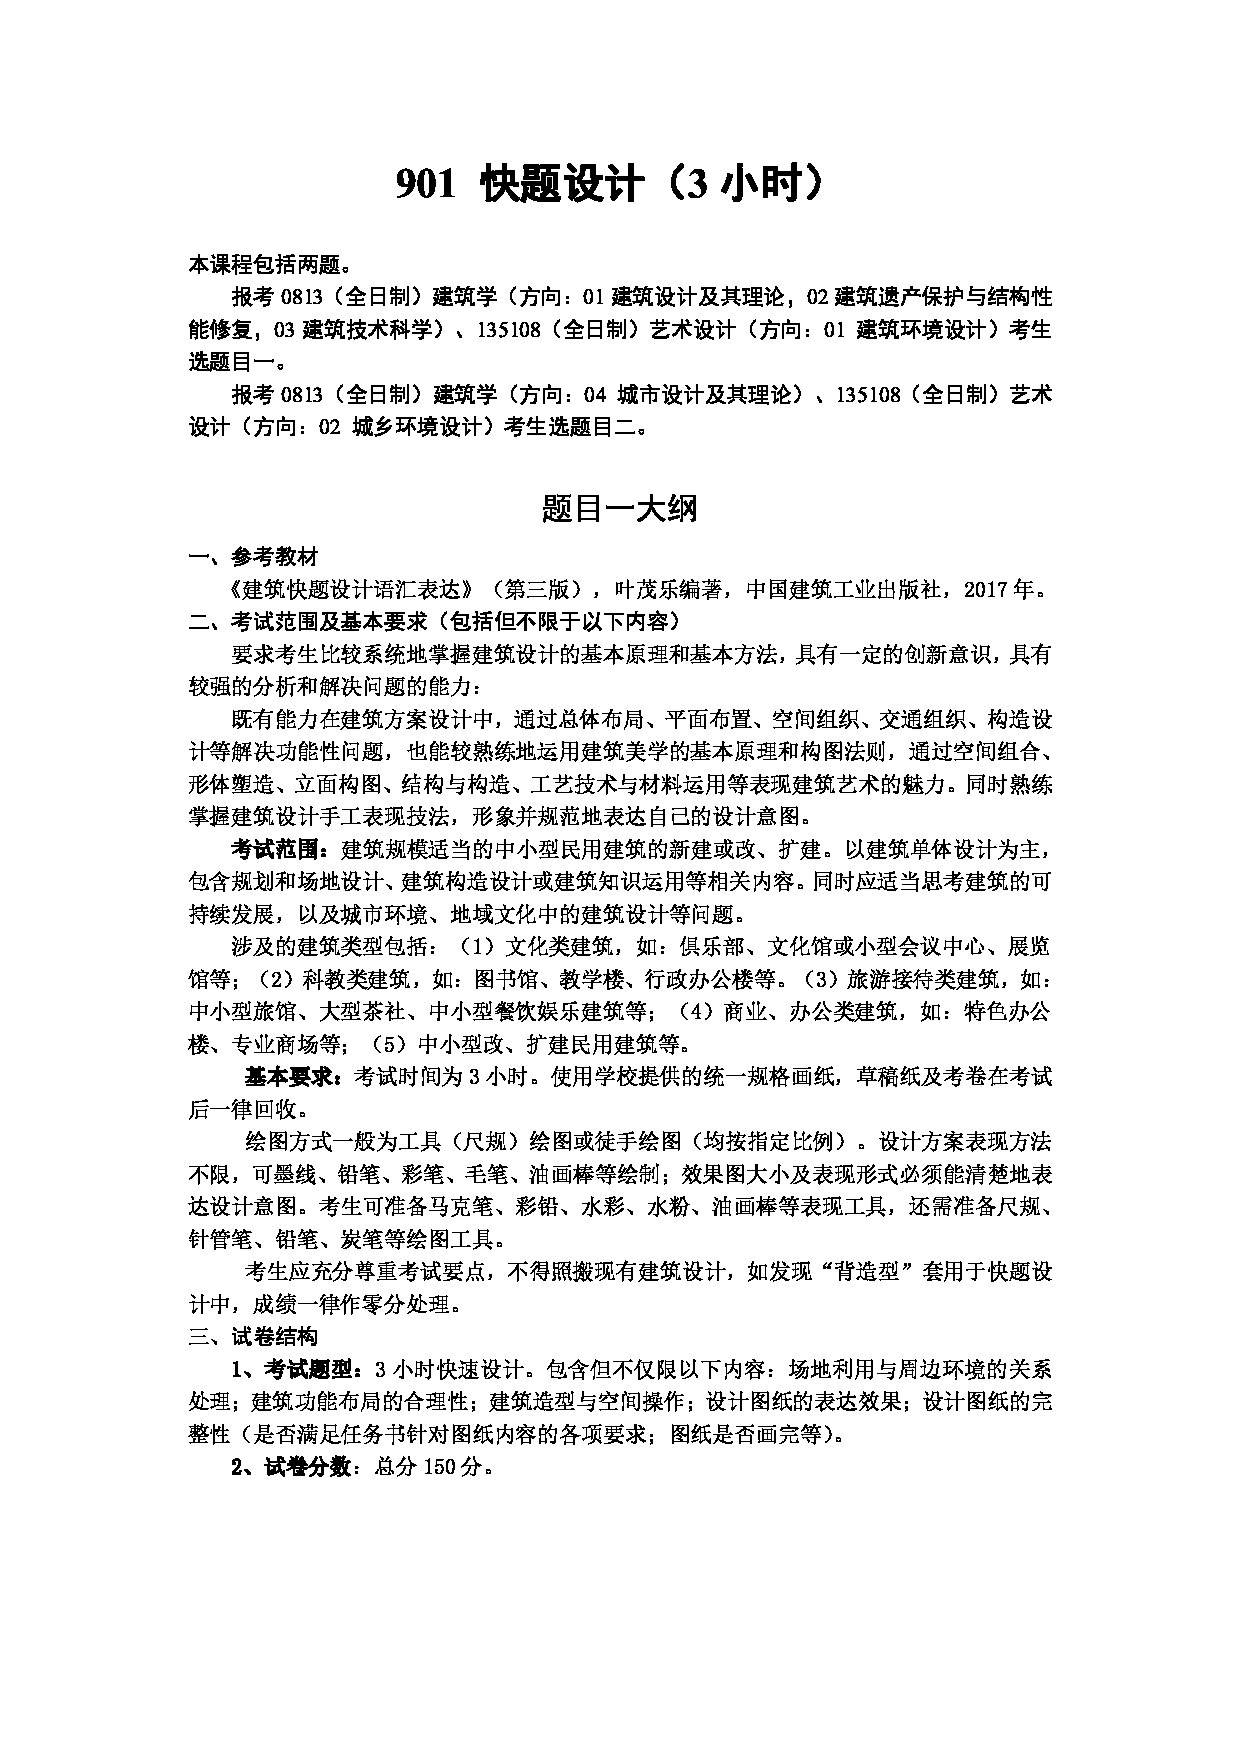 2023考研大纲：武汉科技大学2023年考研科目 901-快题设计(3小时) 考试大纲第1页